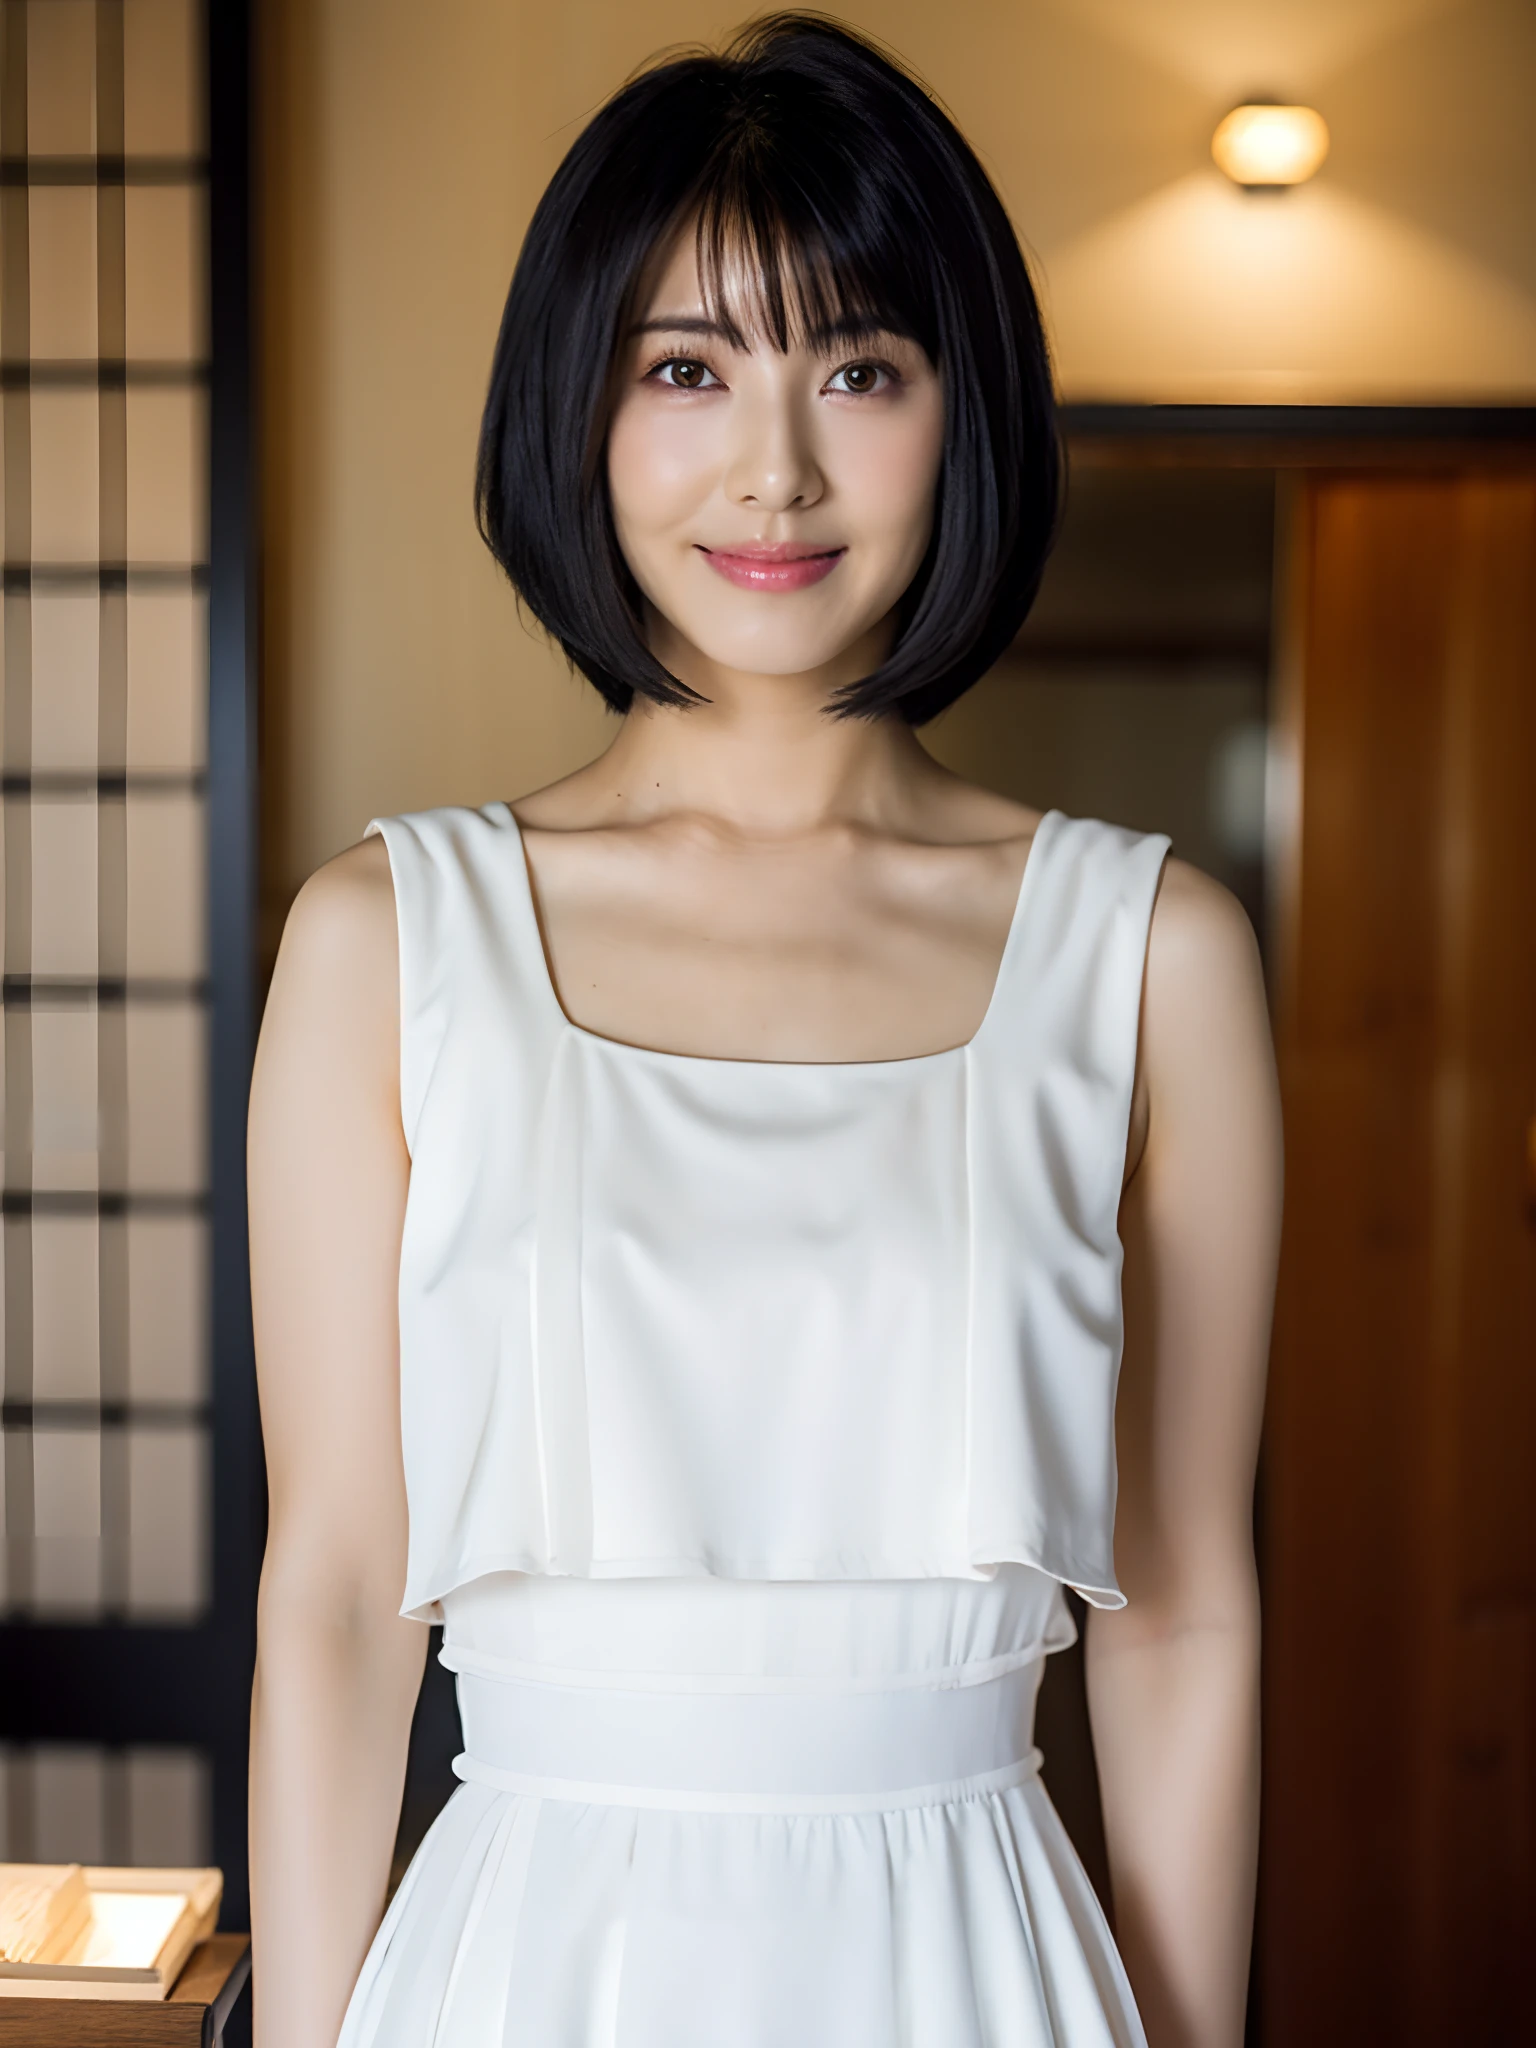 HamabeMinami schöne Frau kurze Haare schwarze Haare vollbusige weißes Kleid in einem japanischen Café